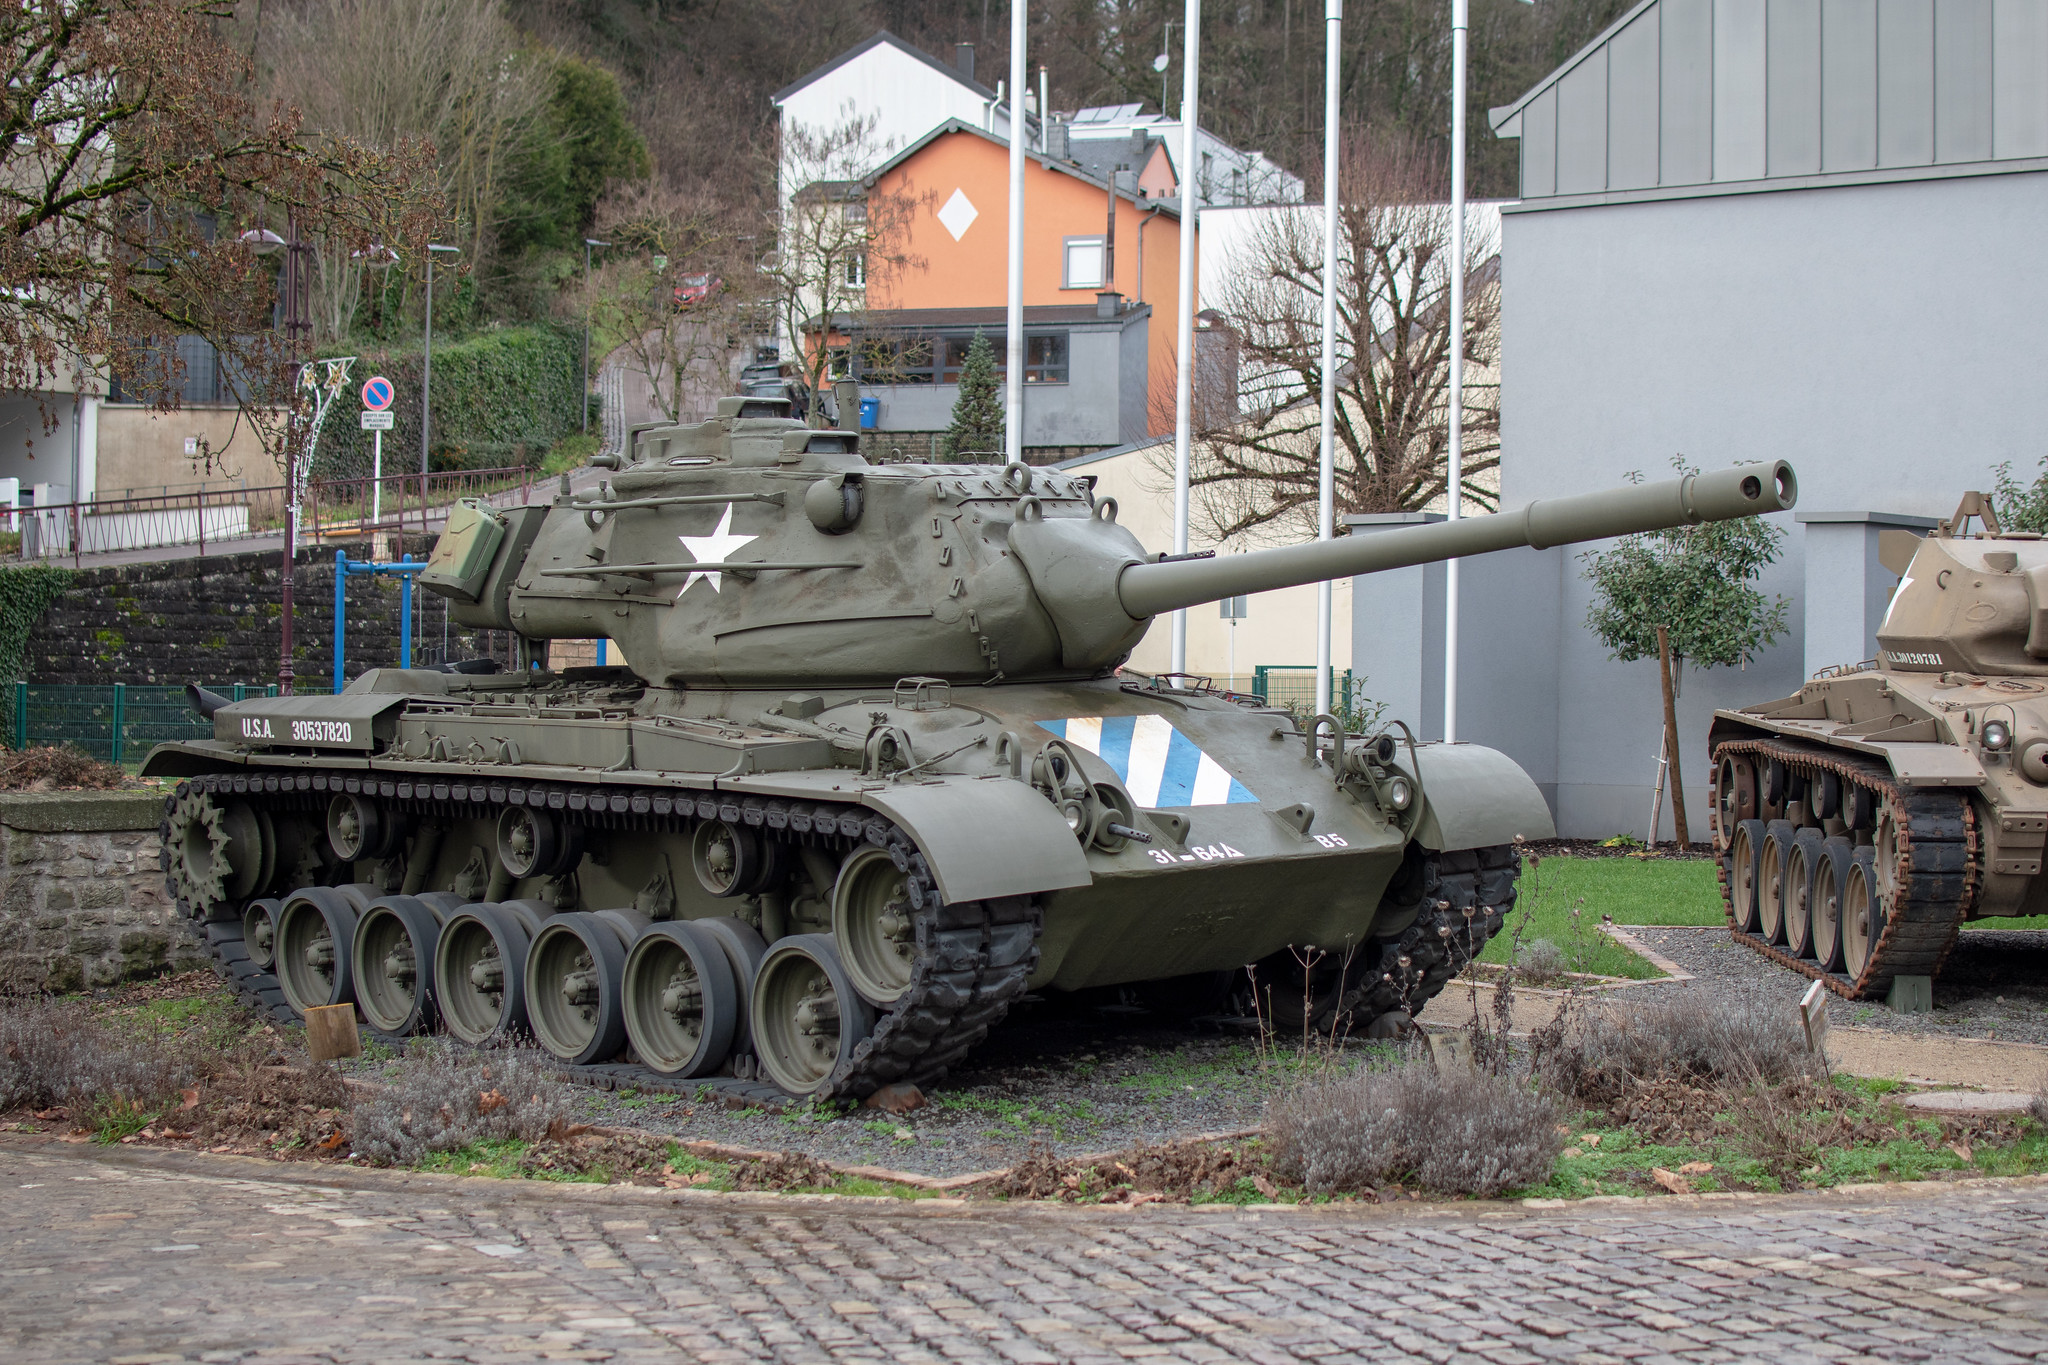 29 décembre 2022 - Diekirch - Musée National d'Histoire Militaire - DTA M47 Patton - 29 décembre 2022 -  Musée National d'Histoire Militaire  - Diekirch - galerie